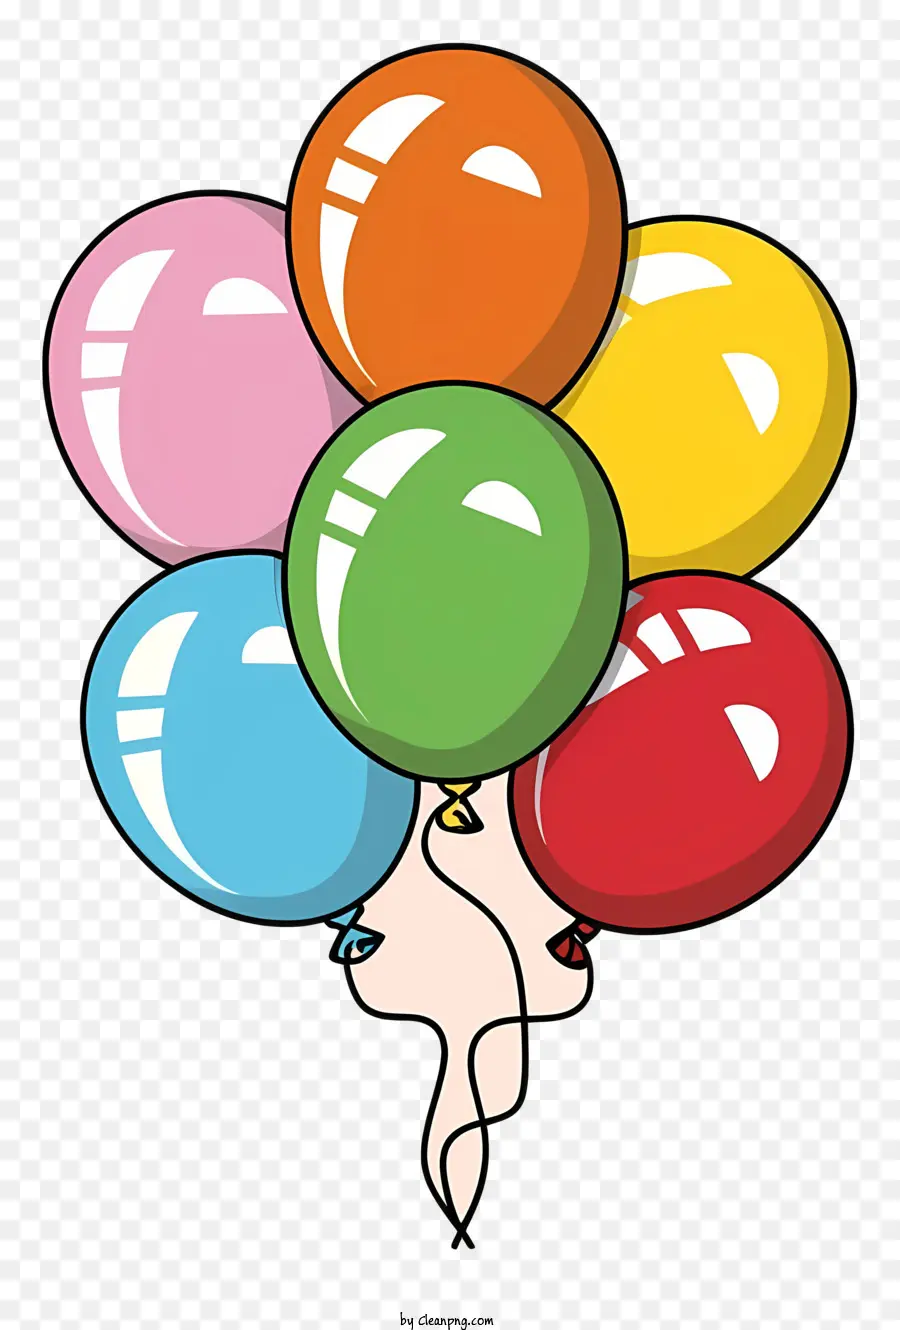 Luftballons farbenfrohe hängende leichte Saiten - Bunte Luftballons mit Fäden, die vor schwarzem Hintergrund schweben